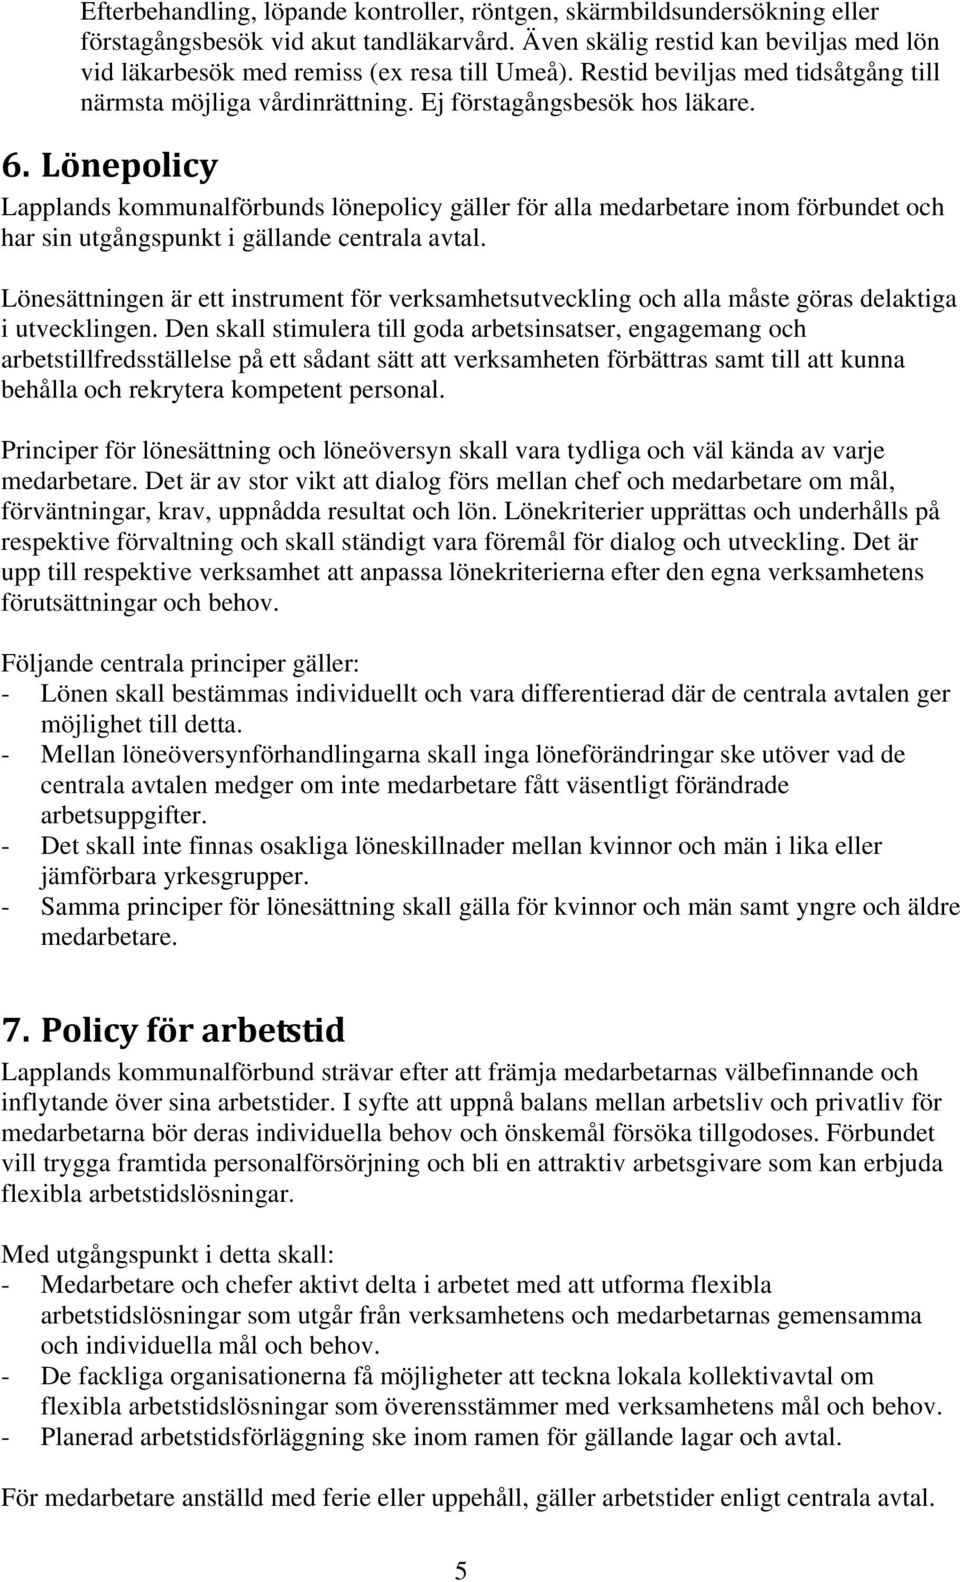 Lönepolicy Lapplands kommunalförbunds lönepolicy gäller för alla medarbetare inom förbundet och har sin utgångspunkt i gällande centrala avtal.